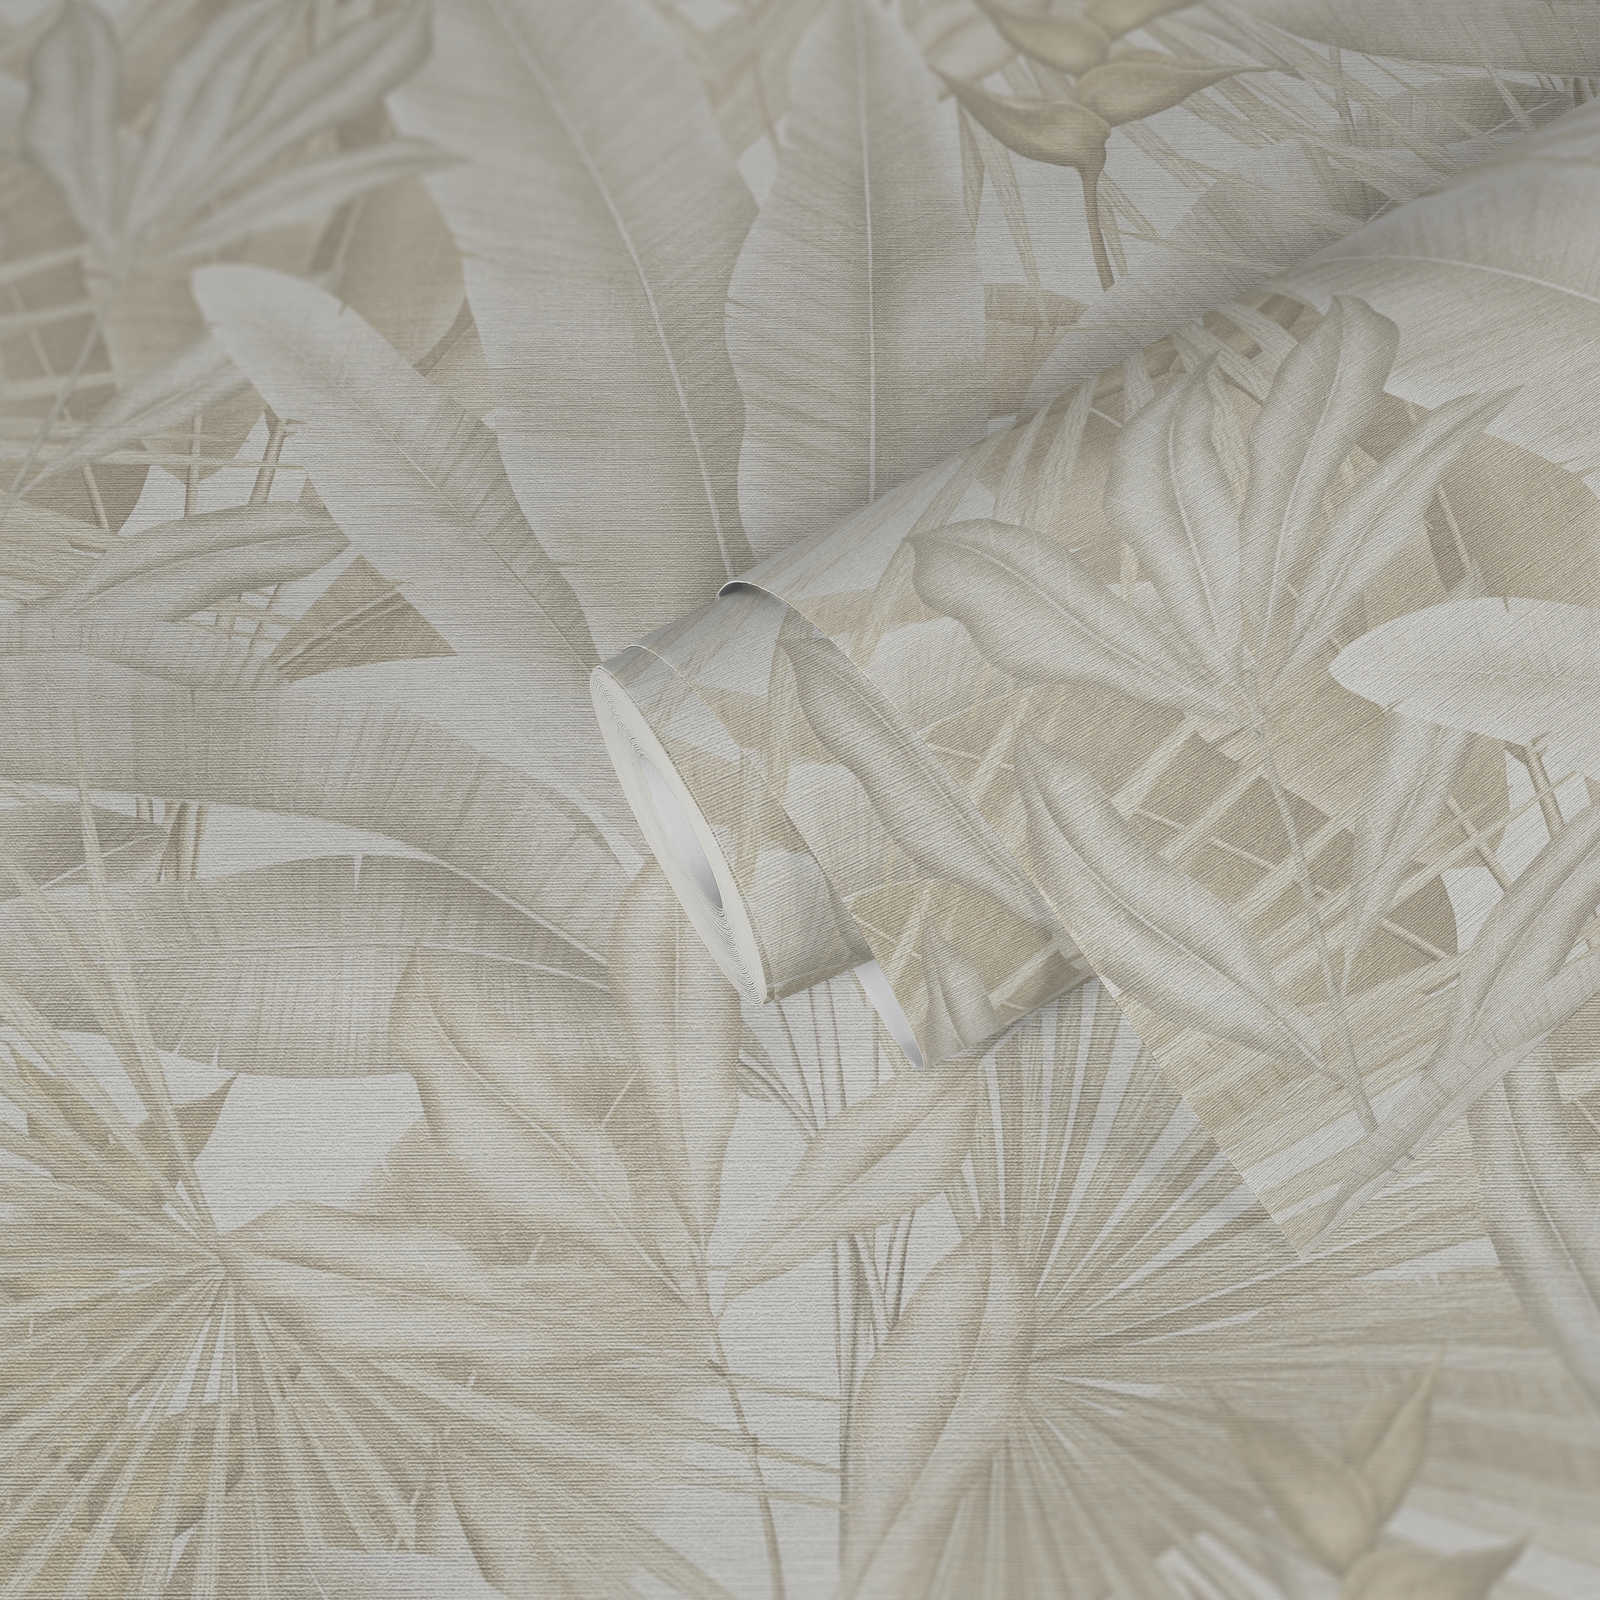             Papel pintado jungla en colores suaves - beige, crema, gris
        